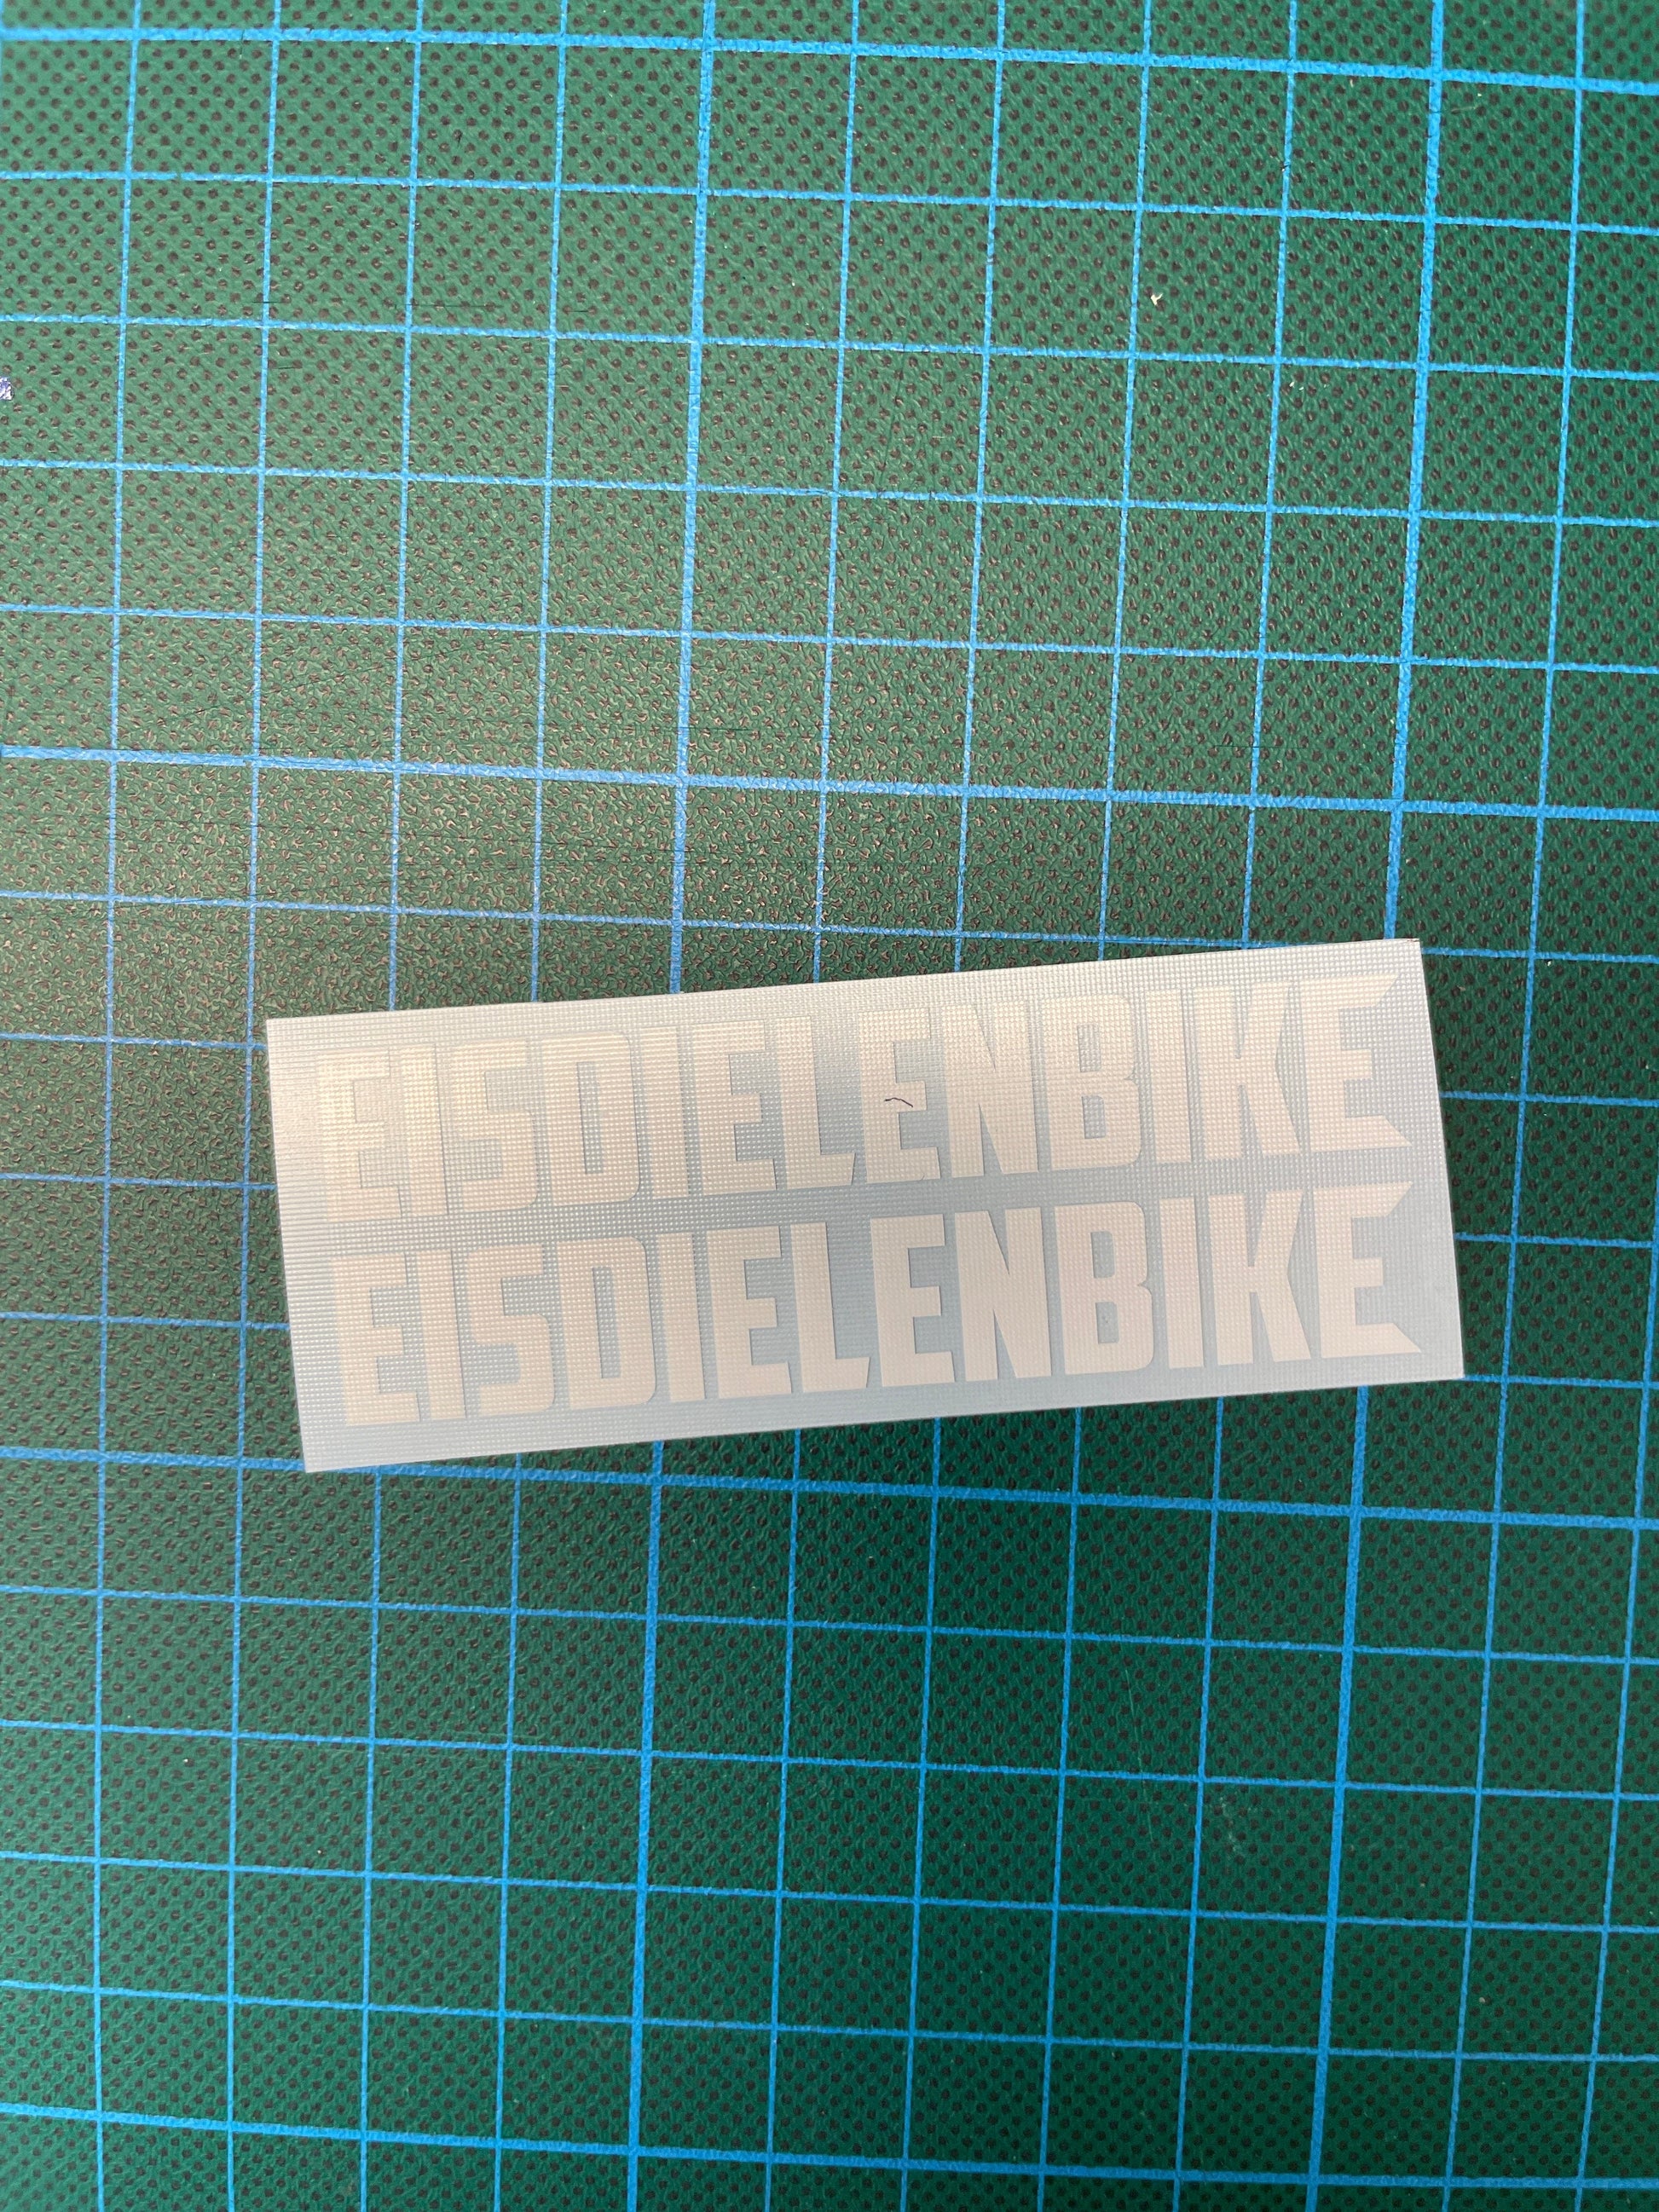 Sons of Battery - E-MTB Brand & Community Folien Weiss / Eisdielenbike EISDIELENBIKE / BIERGARTENBIKE E-Bike-Community